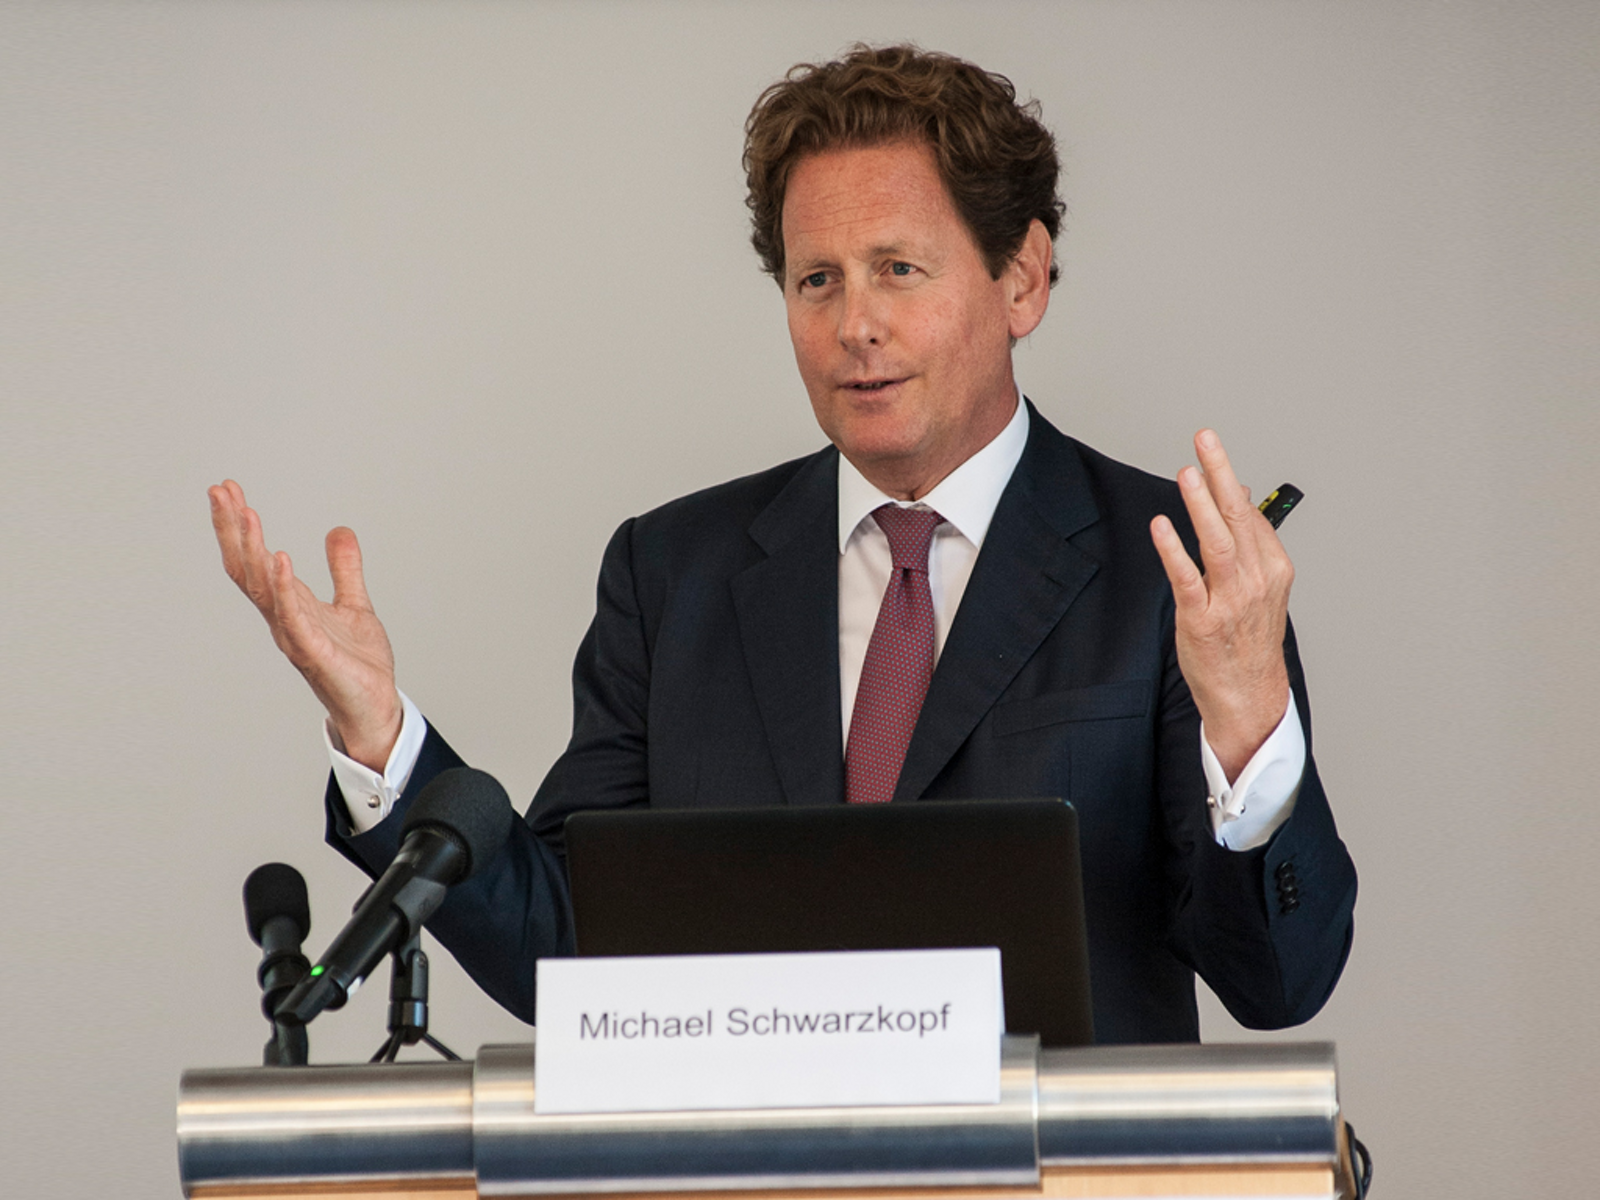 Michael Schwarzkopf à la conférence de presse annuelle du Groupe Plansee